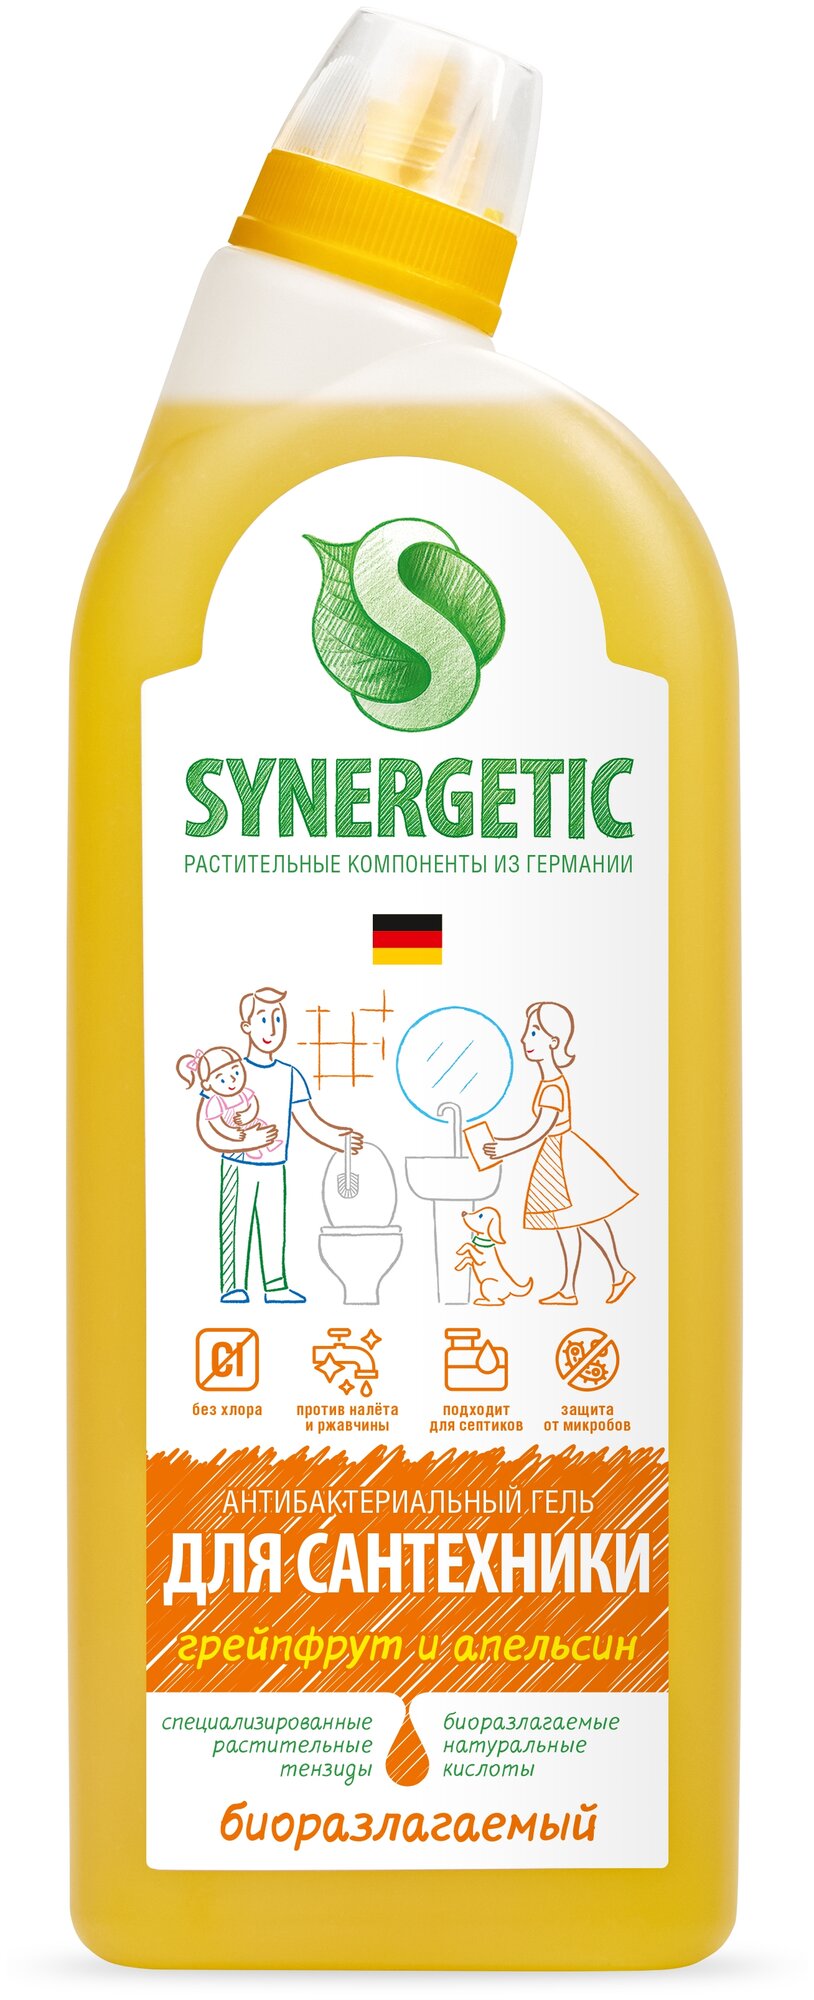 Synergetic антибактериальный гель для сантехники "Грейпфрут и апельсин"